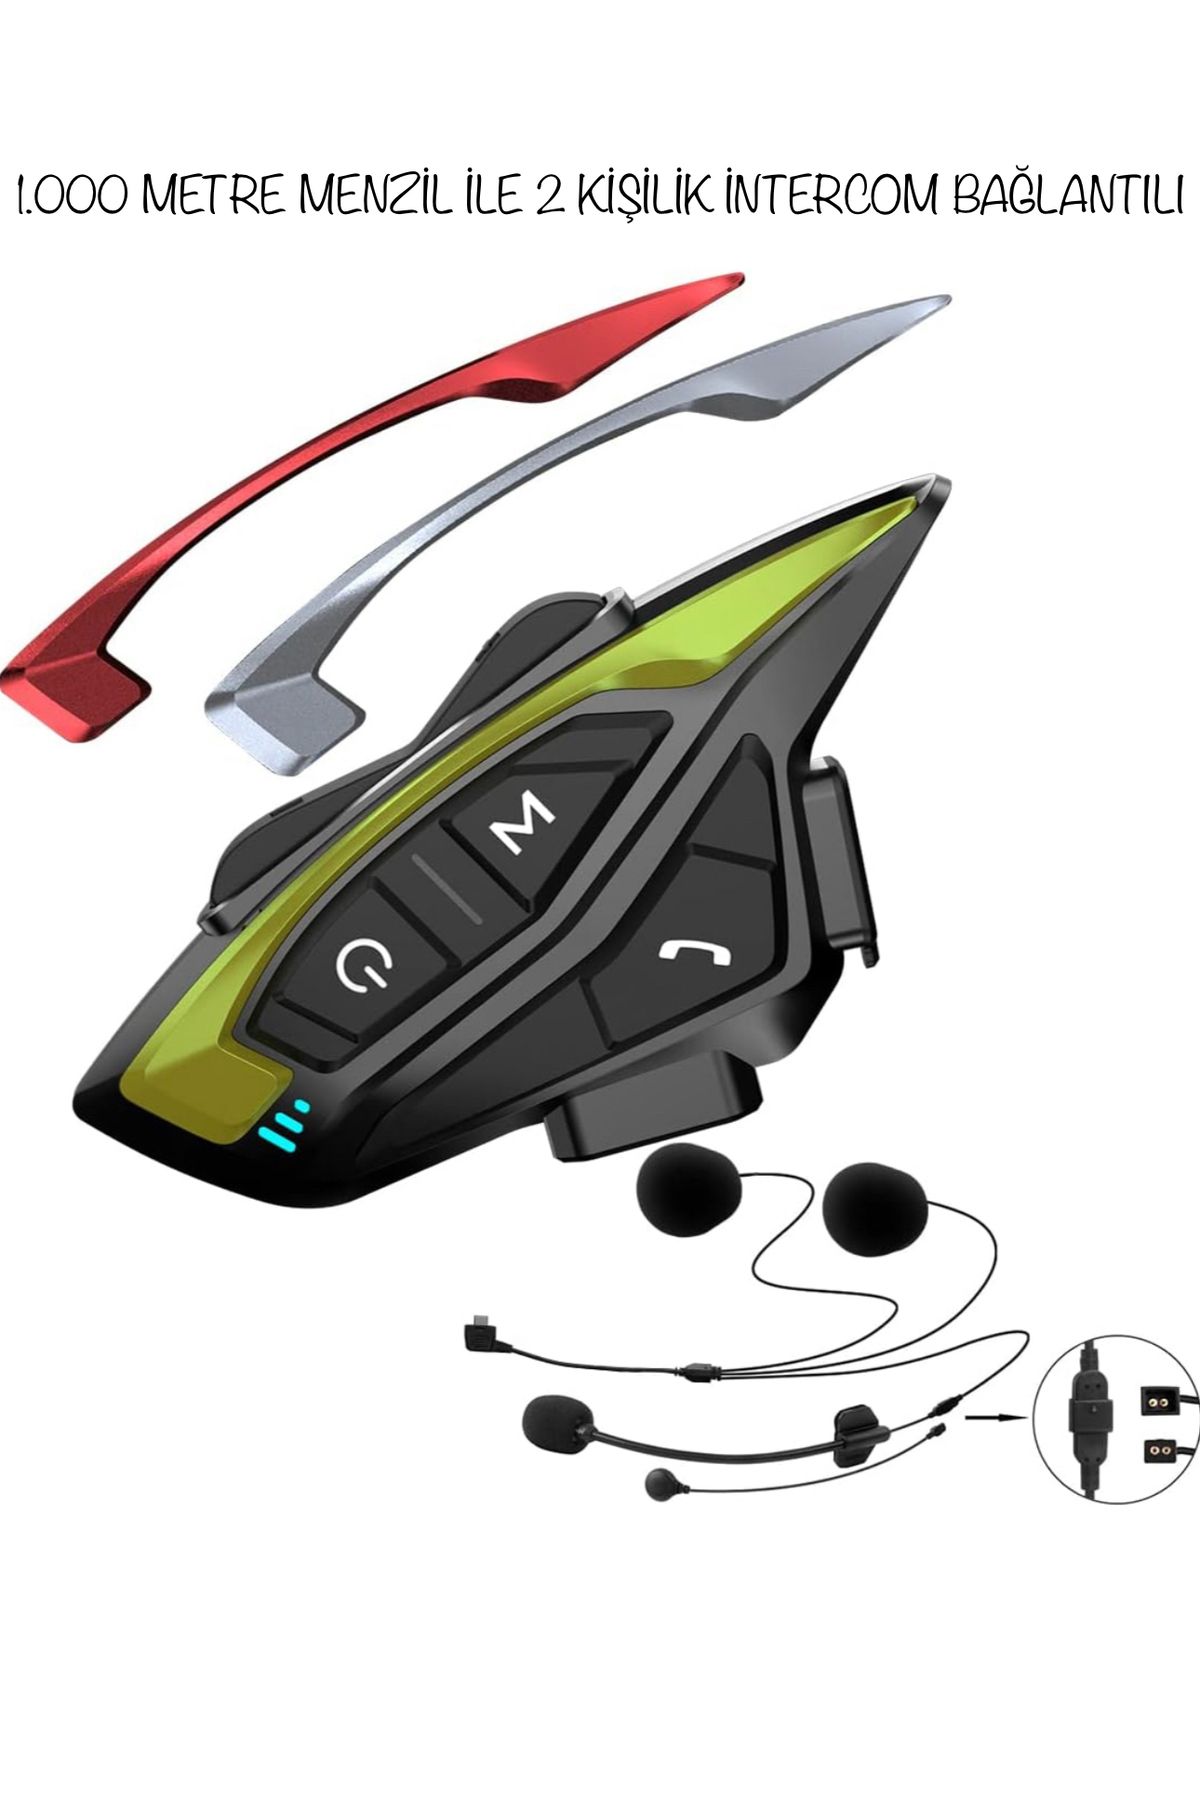 Enshall Köpek Balığı Model 1Km Mesafeli 2Kişilik Motor Kask Kulaklığı İntercom